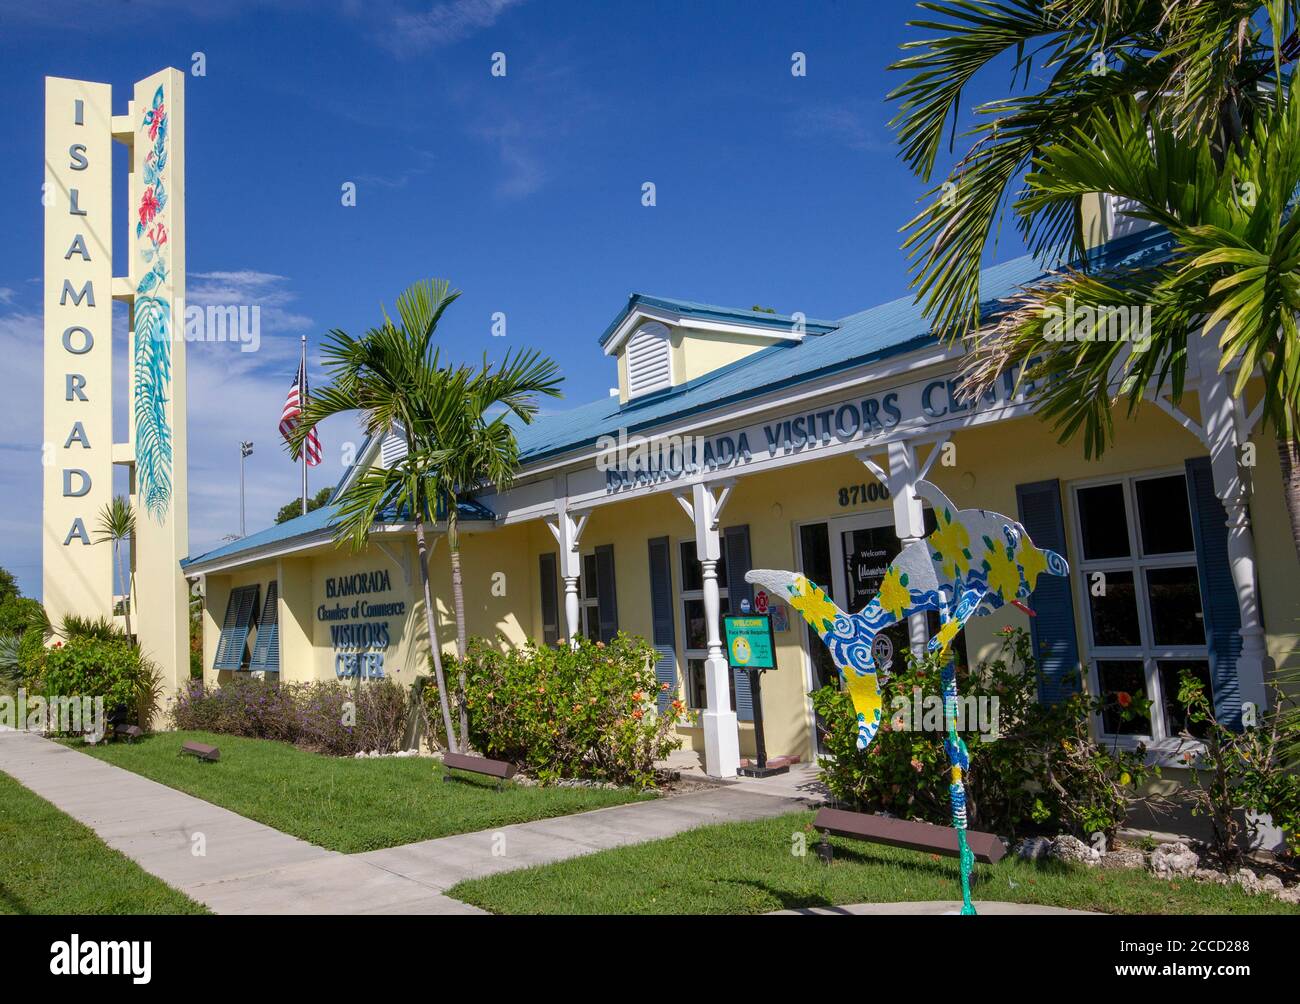 Centro visitatori Islamorada nella contea di Monroe, Florida, Stati Uniti. Composto da Tea Table Key, Matecumbe Key inferiore, Matecumessere Key superiore, Windley Key A. Foto Stock